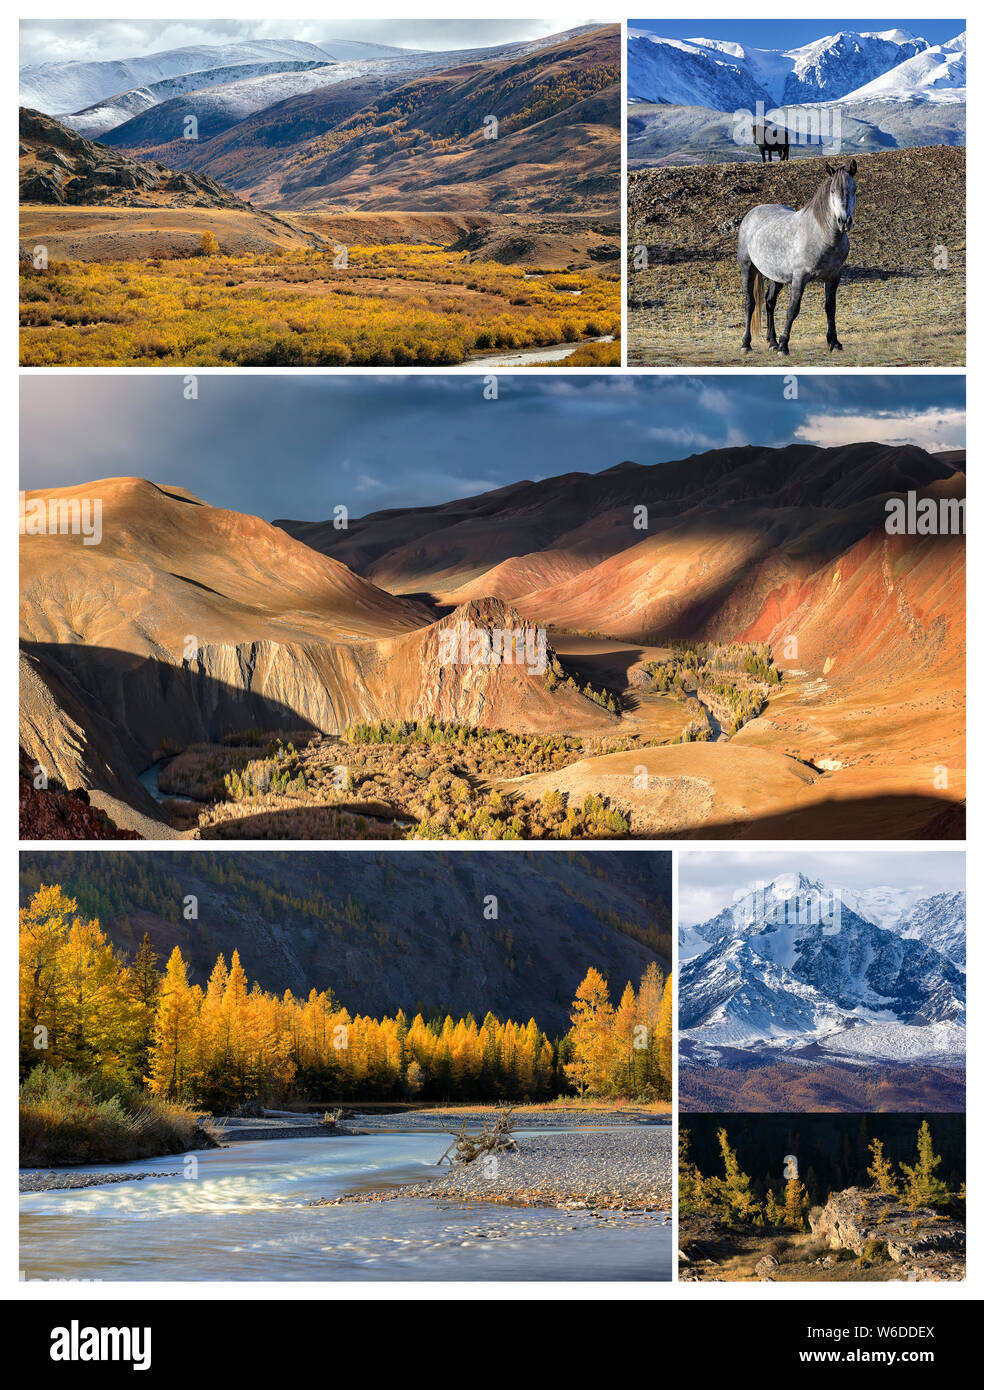 Collage de fotos con espacio para el texto. Paisaje otoñal con Aktru river y pico Karatash, Chuya river, Kurai estepas y montañas, caballos salvajes y Foto de stock